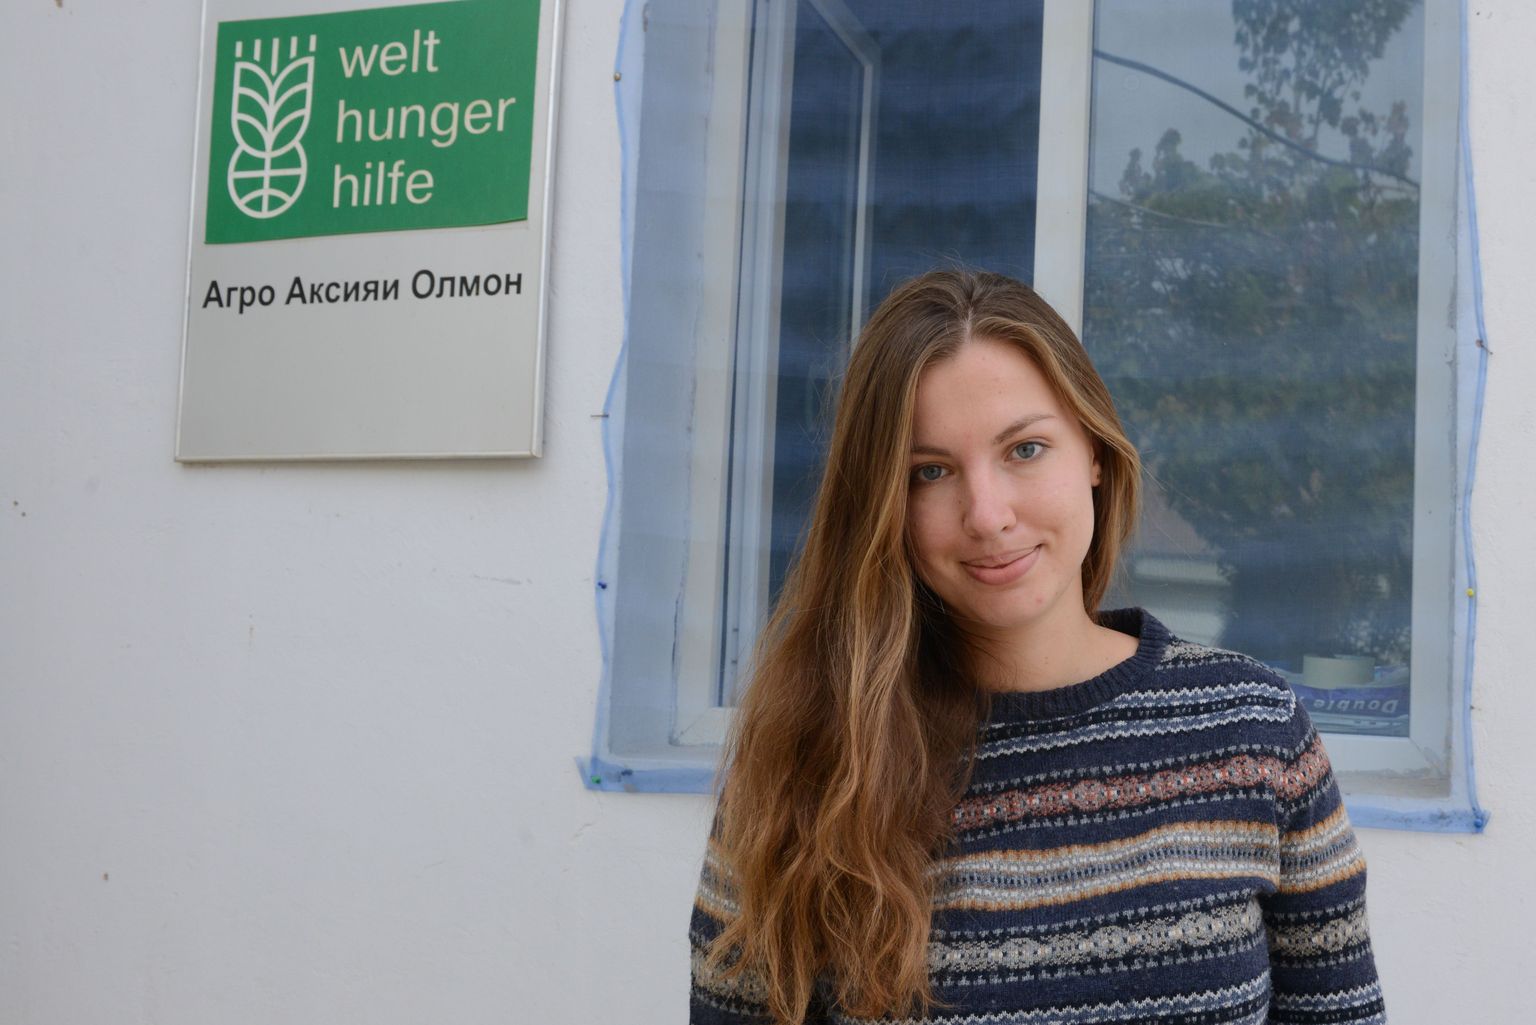 Erika Tšerkašina Baljuvonis sakslaste abiorganisatsiooni Welthungerhilfe kohaliku peakorteri ees, mis on tavaline külamaja.